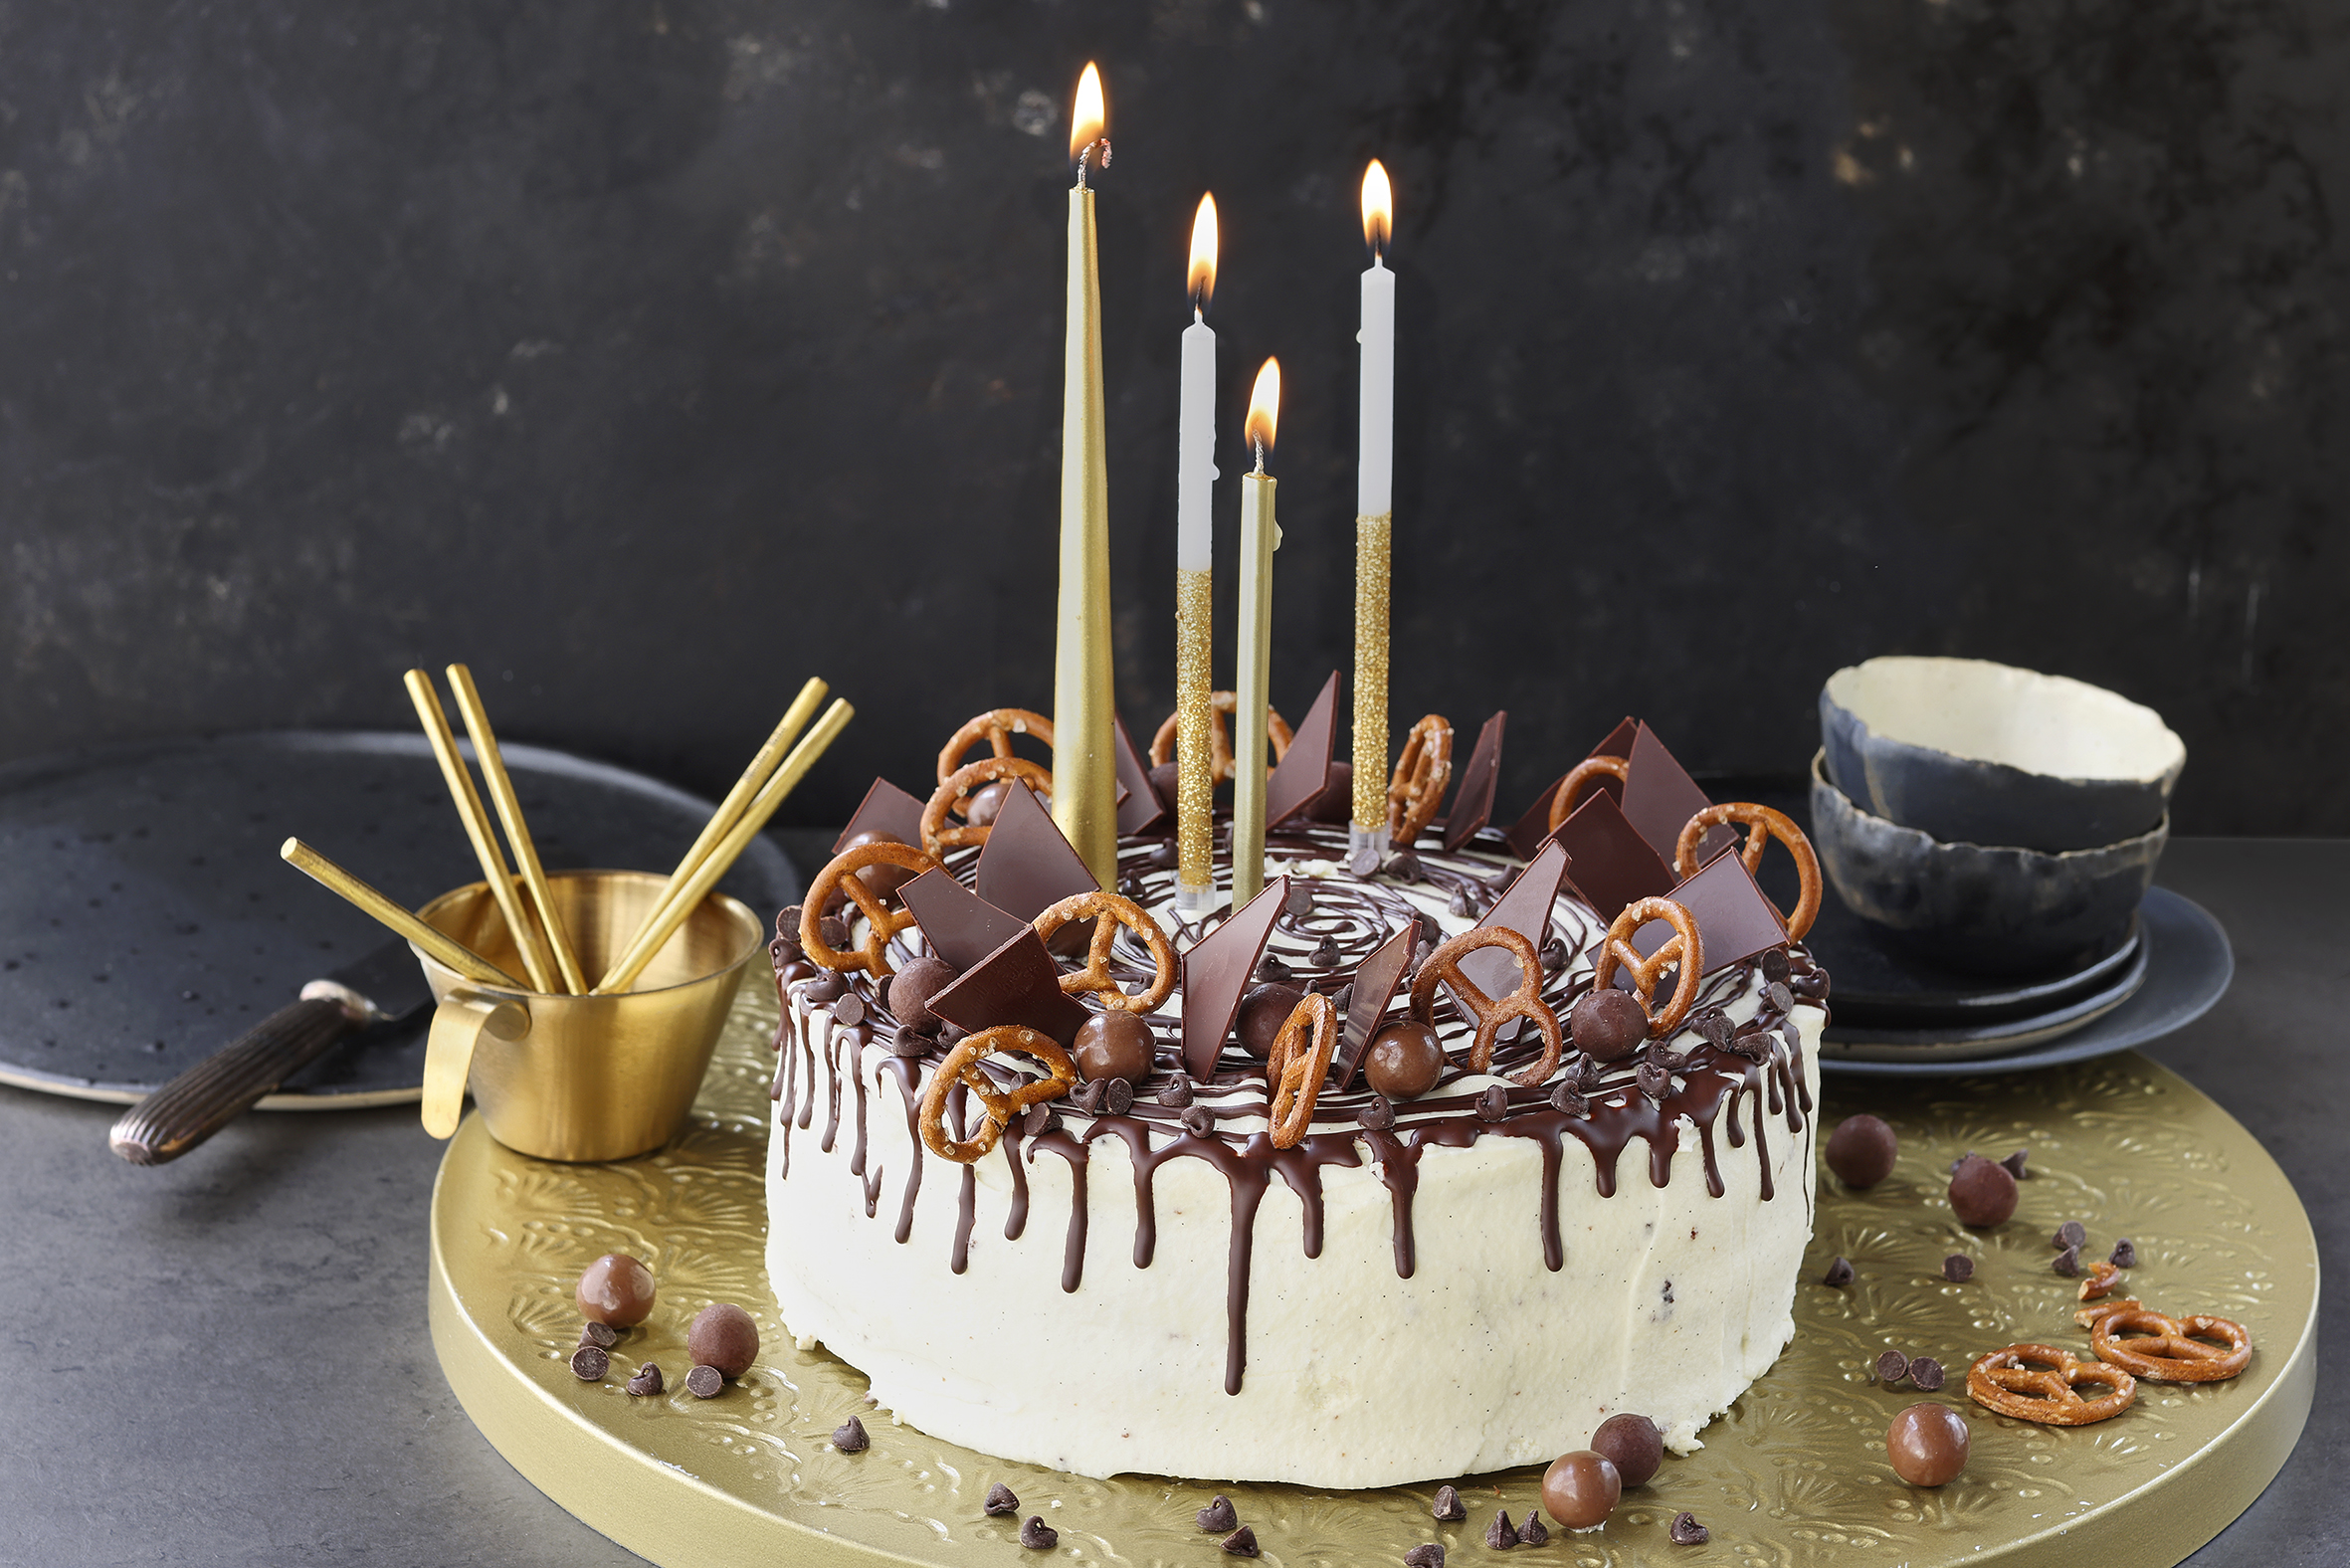 Gâteau d'anniversaire chocolat-noisette et glaçage vanille - Recette